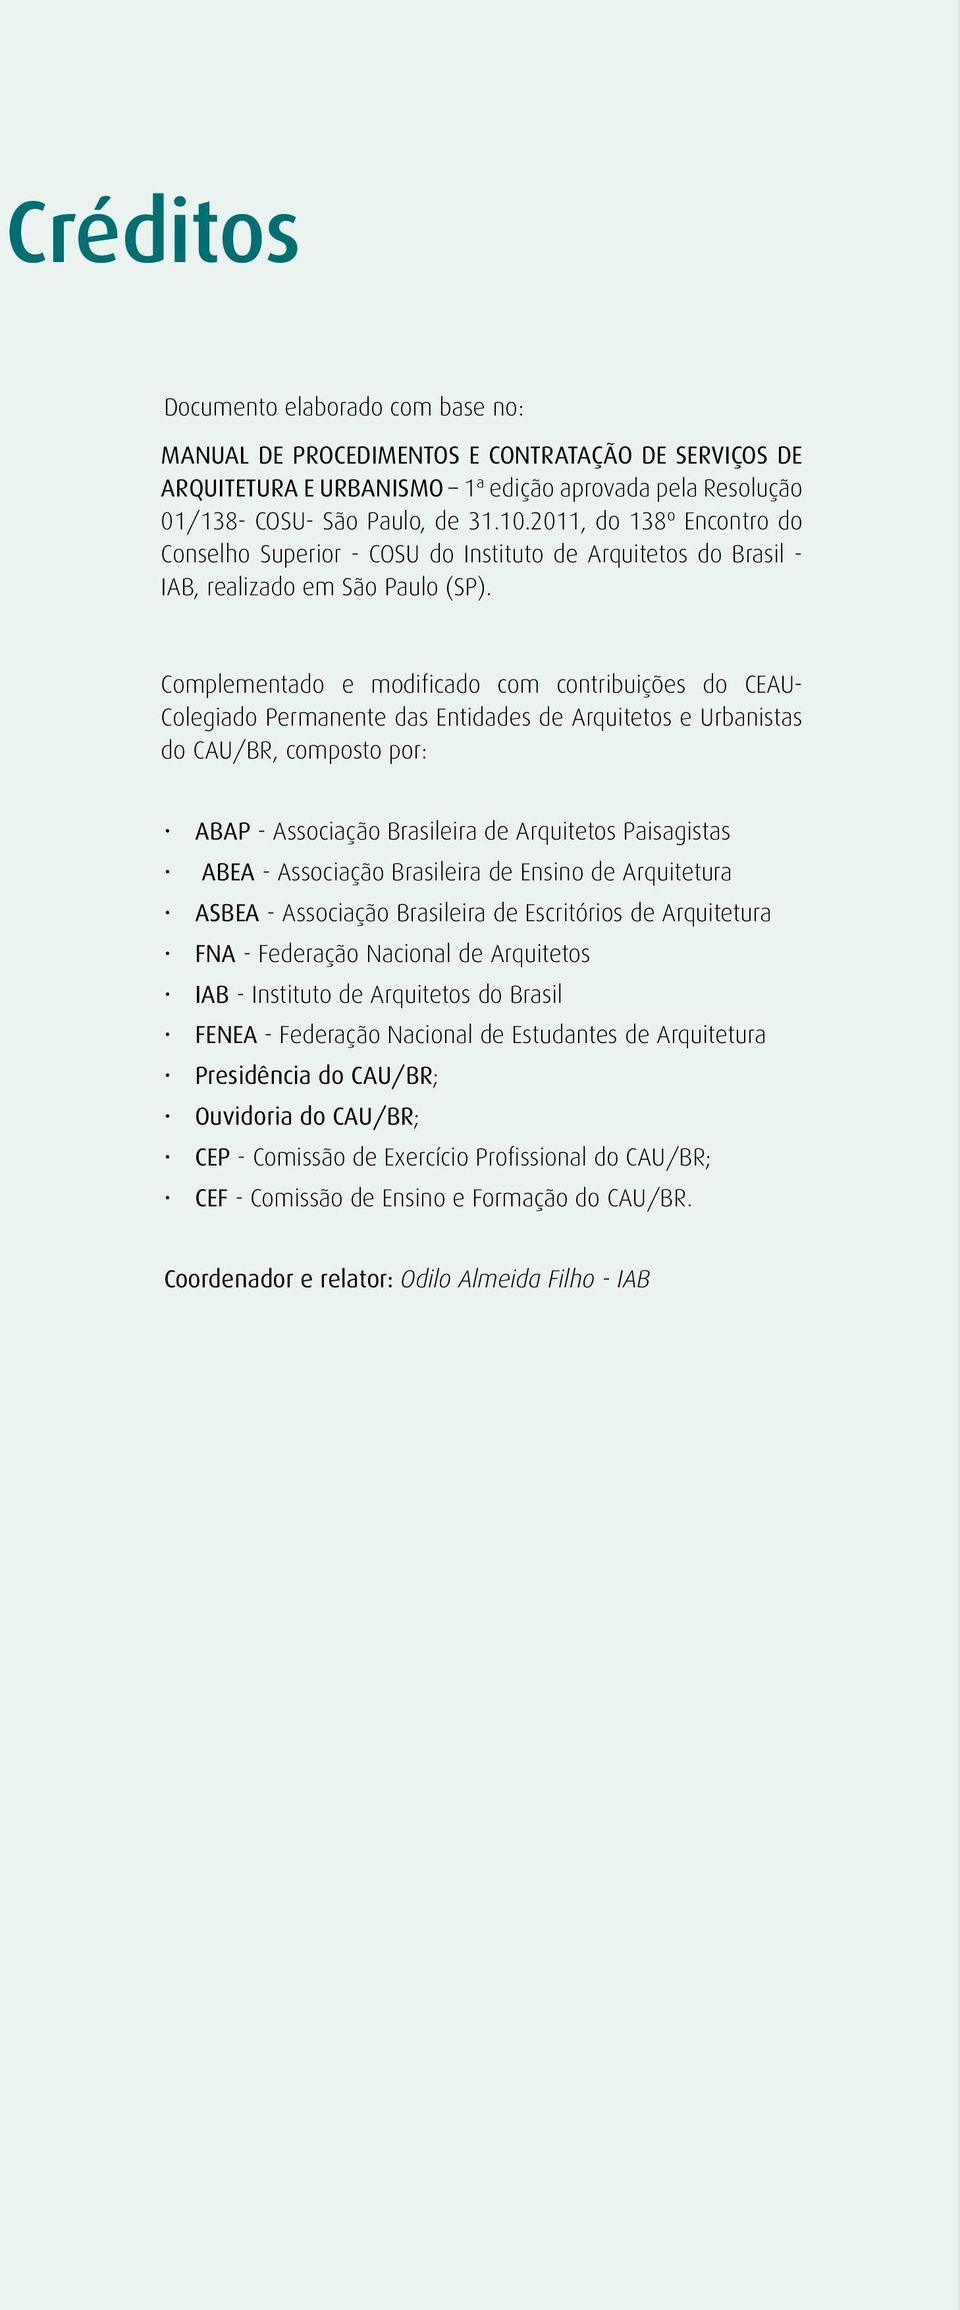 Complementado e modificado com contribuições do CEAU- Colegiado Permanente das Entidades de Arquitetos e Urbanistas do CAU/BR, composto por: ABAP - Associação Brasileira de Arquitetos Paisagistas